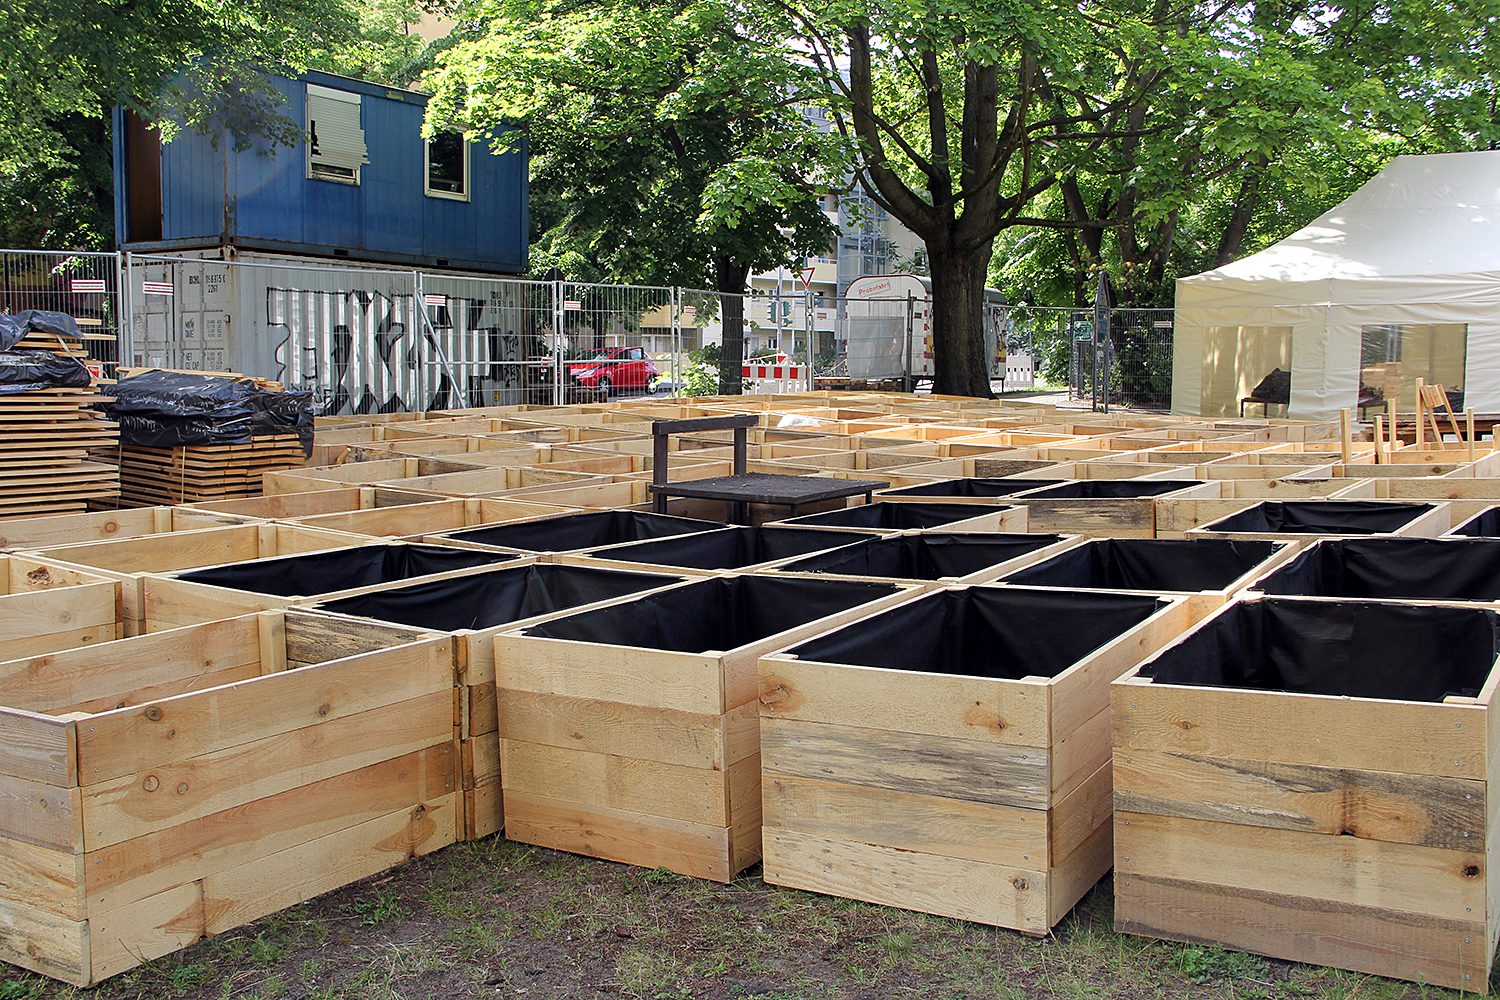 Für den Neuanfang wurde neue Hochbeete gebaut. 200 Stück sollen es in der Gartenstraße werden. In dem blauen Container im Hintergrund soll das Gartenbüro entstehen. Foto: Hensel